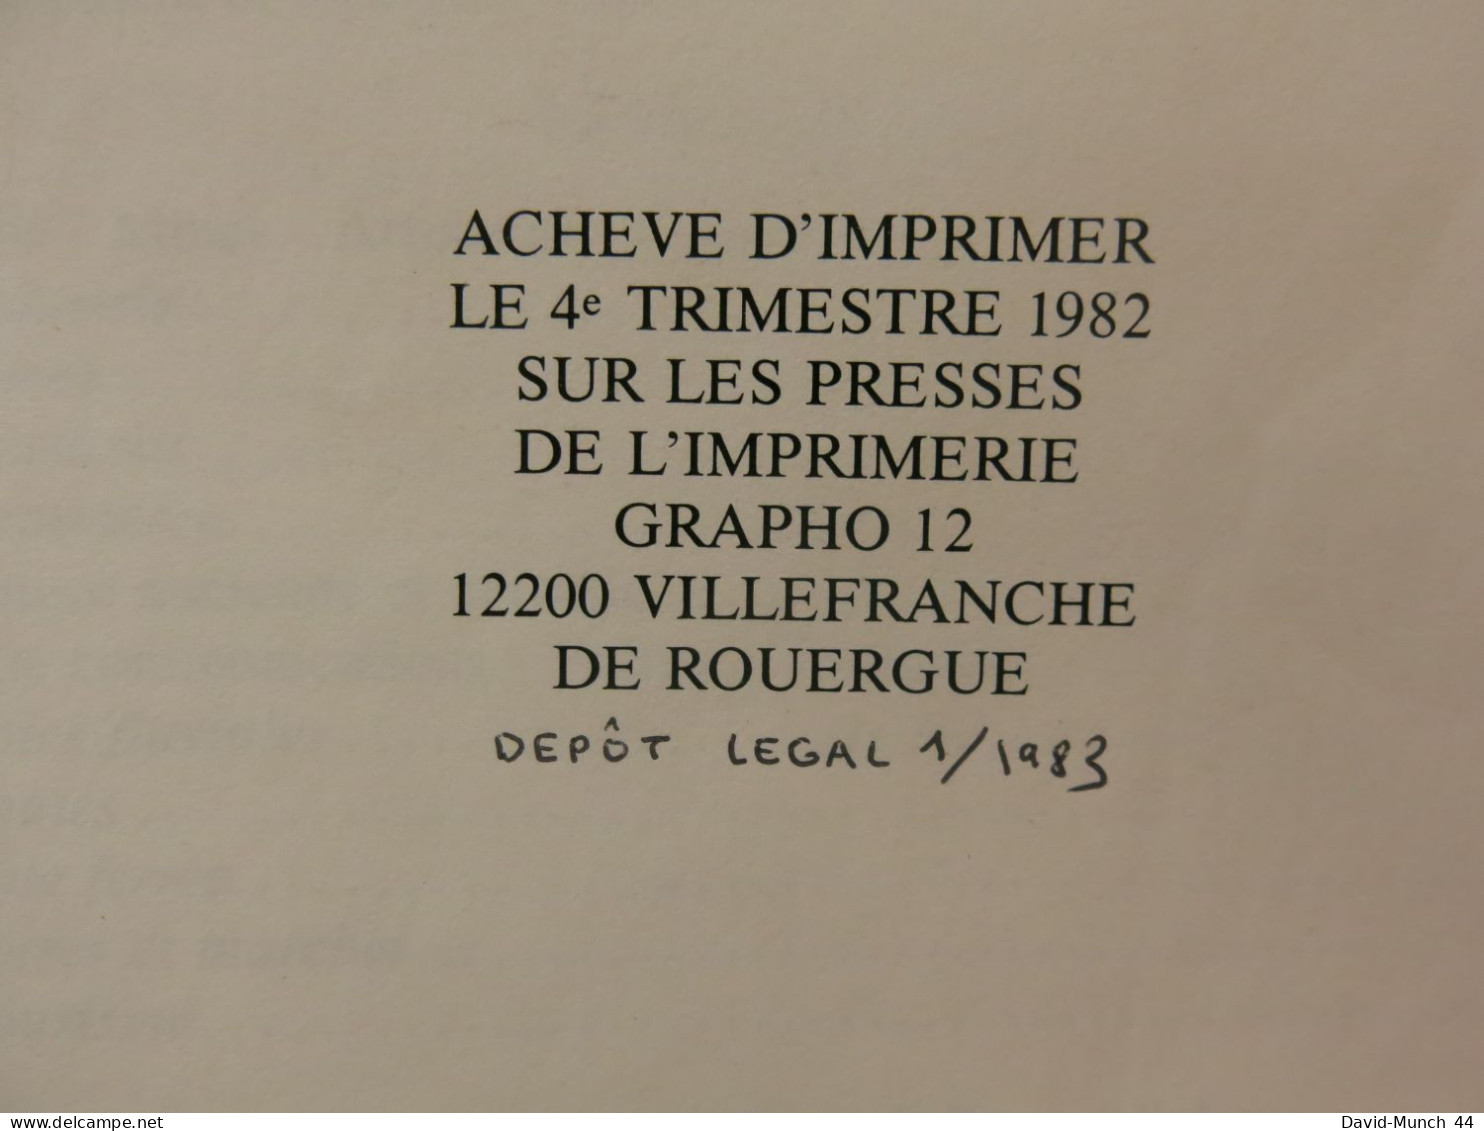 Najac en Rouergue. 1000 ans d'histoire et de vie économique de Marcel Gauchy. 1982